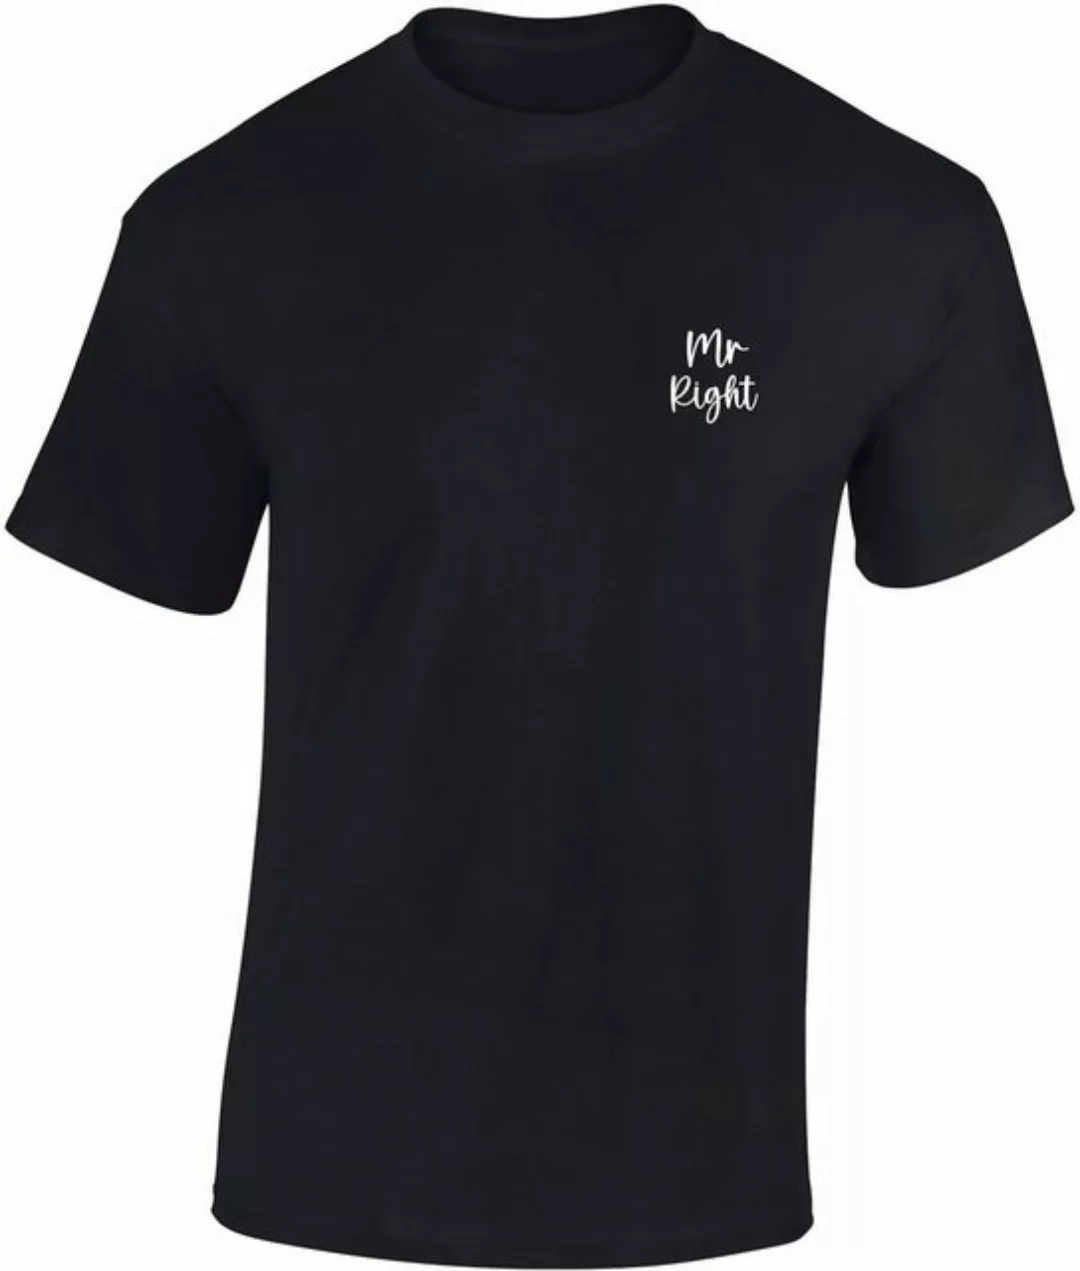 Baddery Print-Shirt Herren T-Shirt : Mr. Right - Funshirts für Männer aus B günstig online kaufen